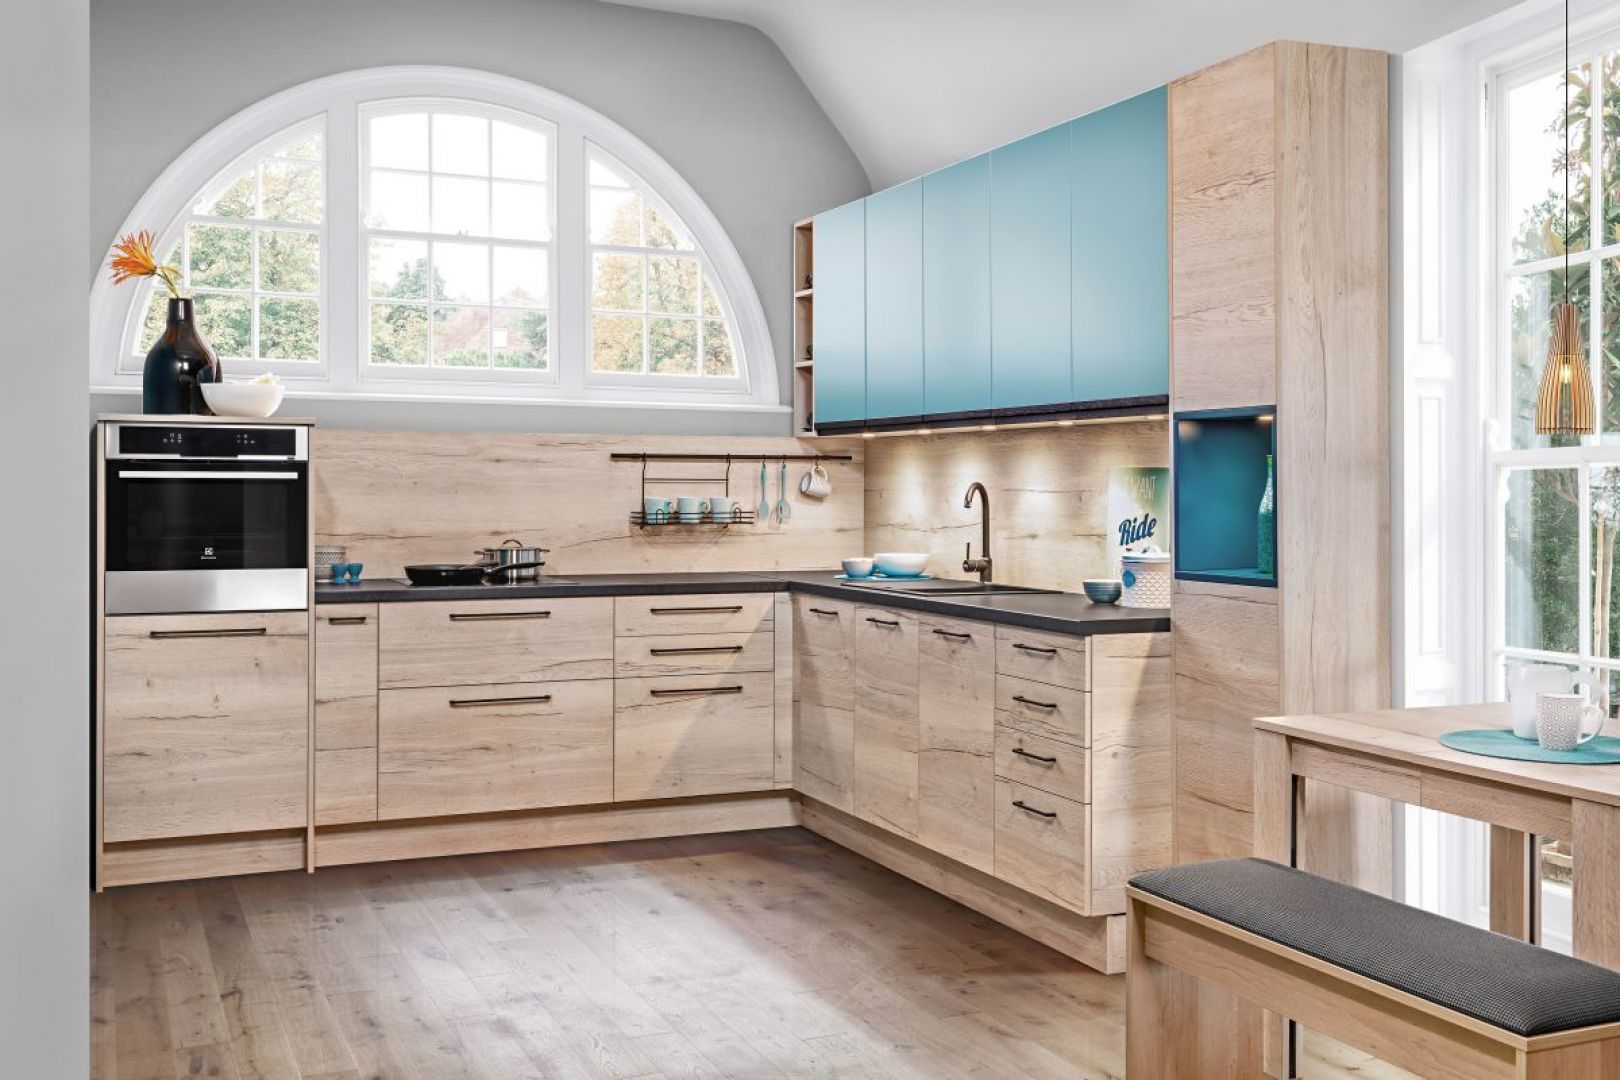 Zabudowę kuchenną z przewagą dekorów  drewna można ożywić intensywnym akcentem kolorystycznym. Fot. Kam